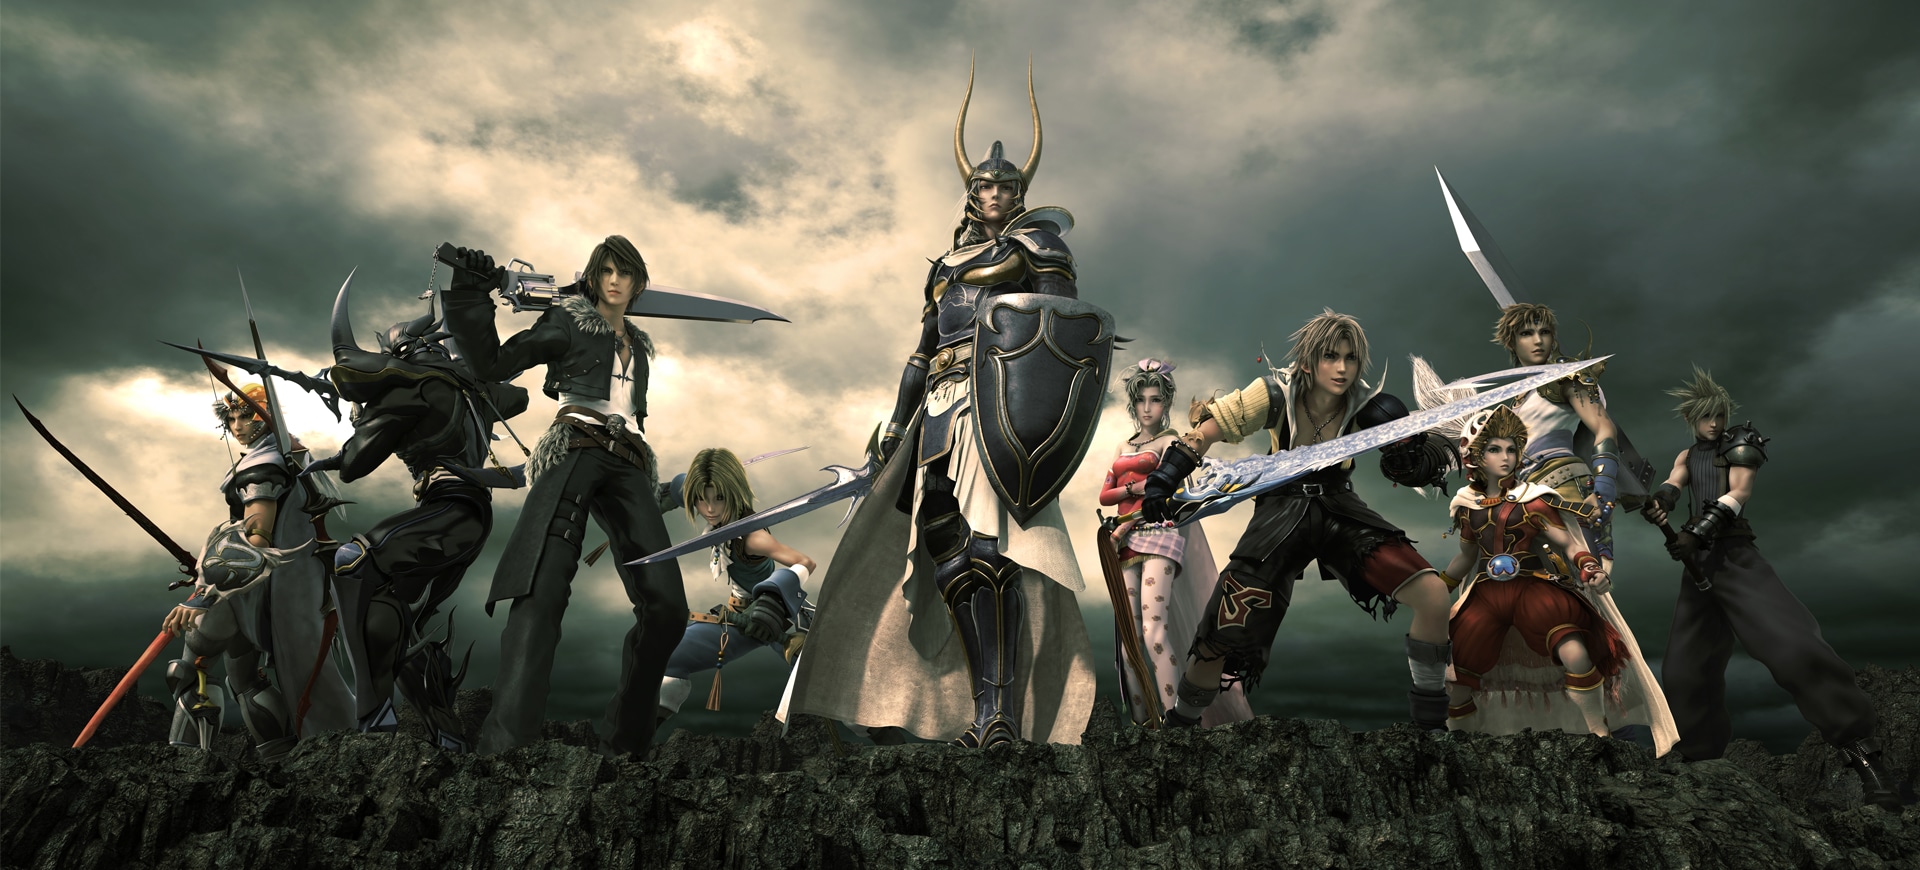 Final Fantasy ảo mộng: Hình ảnh Final Fantasy ảo mộng sẽ mang đến cho bạn sự thư giãn và khám phá những khung cảnh đẹp nhất của tựa game giải đố được yêu thích tại thế giới game. Hãy thưởng thức và lạc vào thế giới tưởng tượng của Final Fantasy.